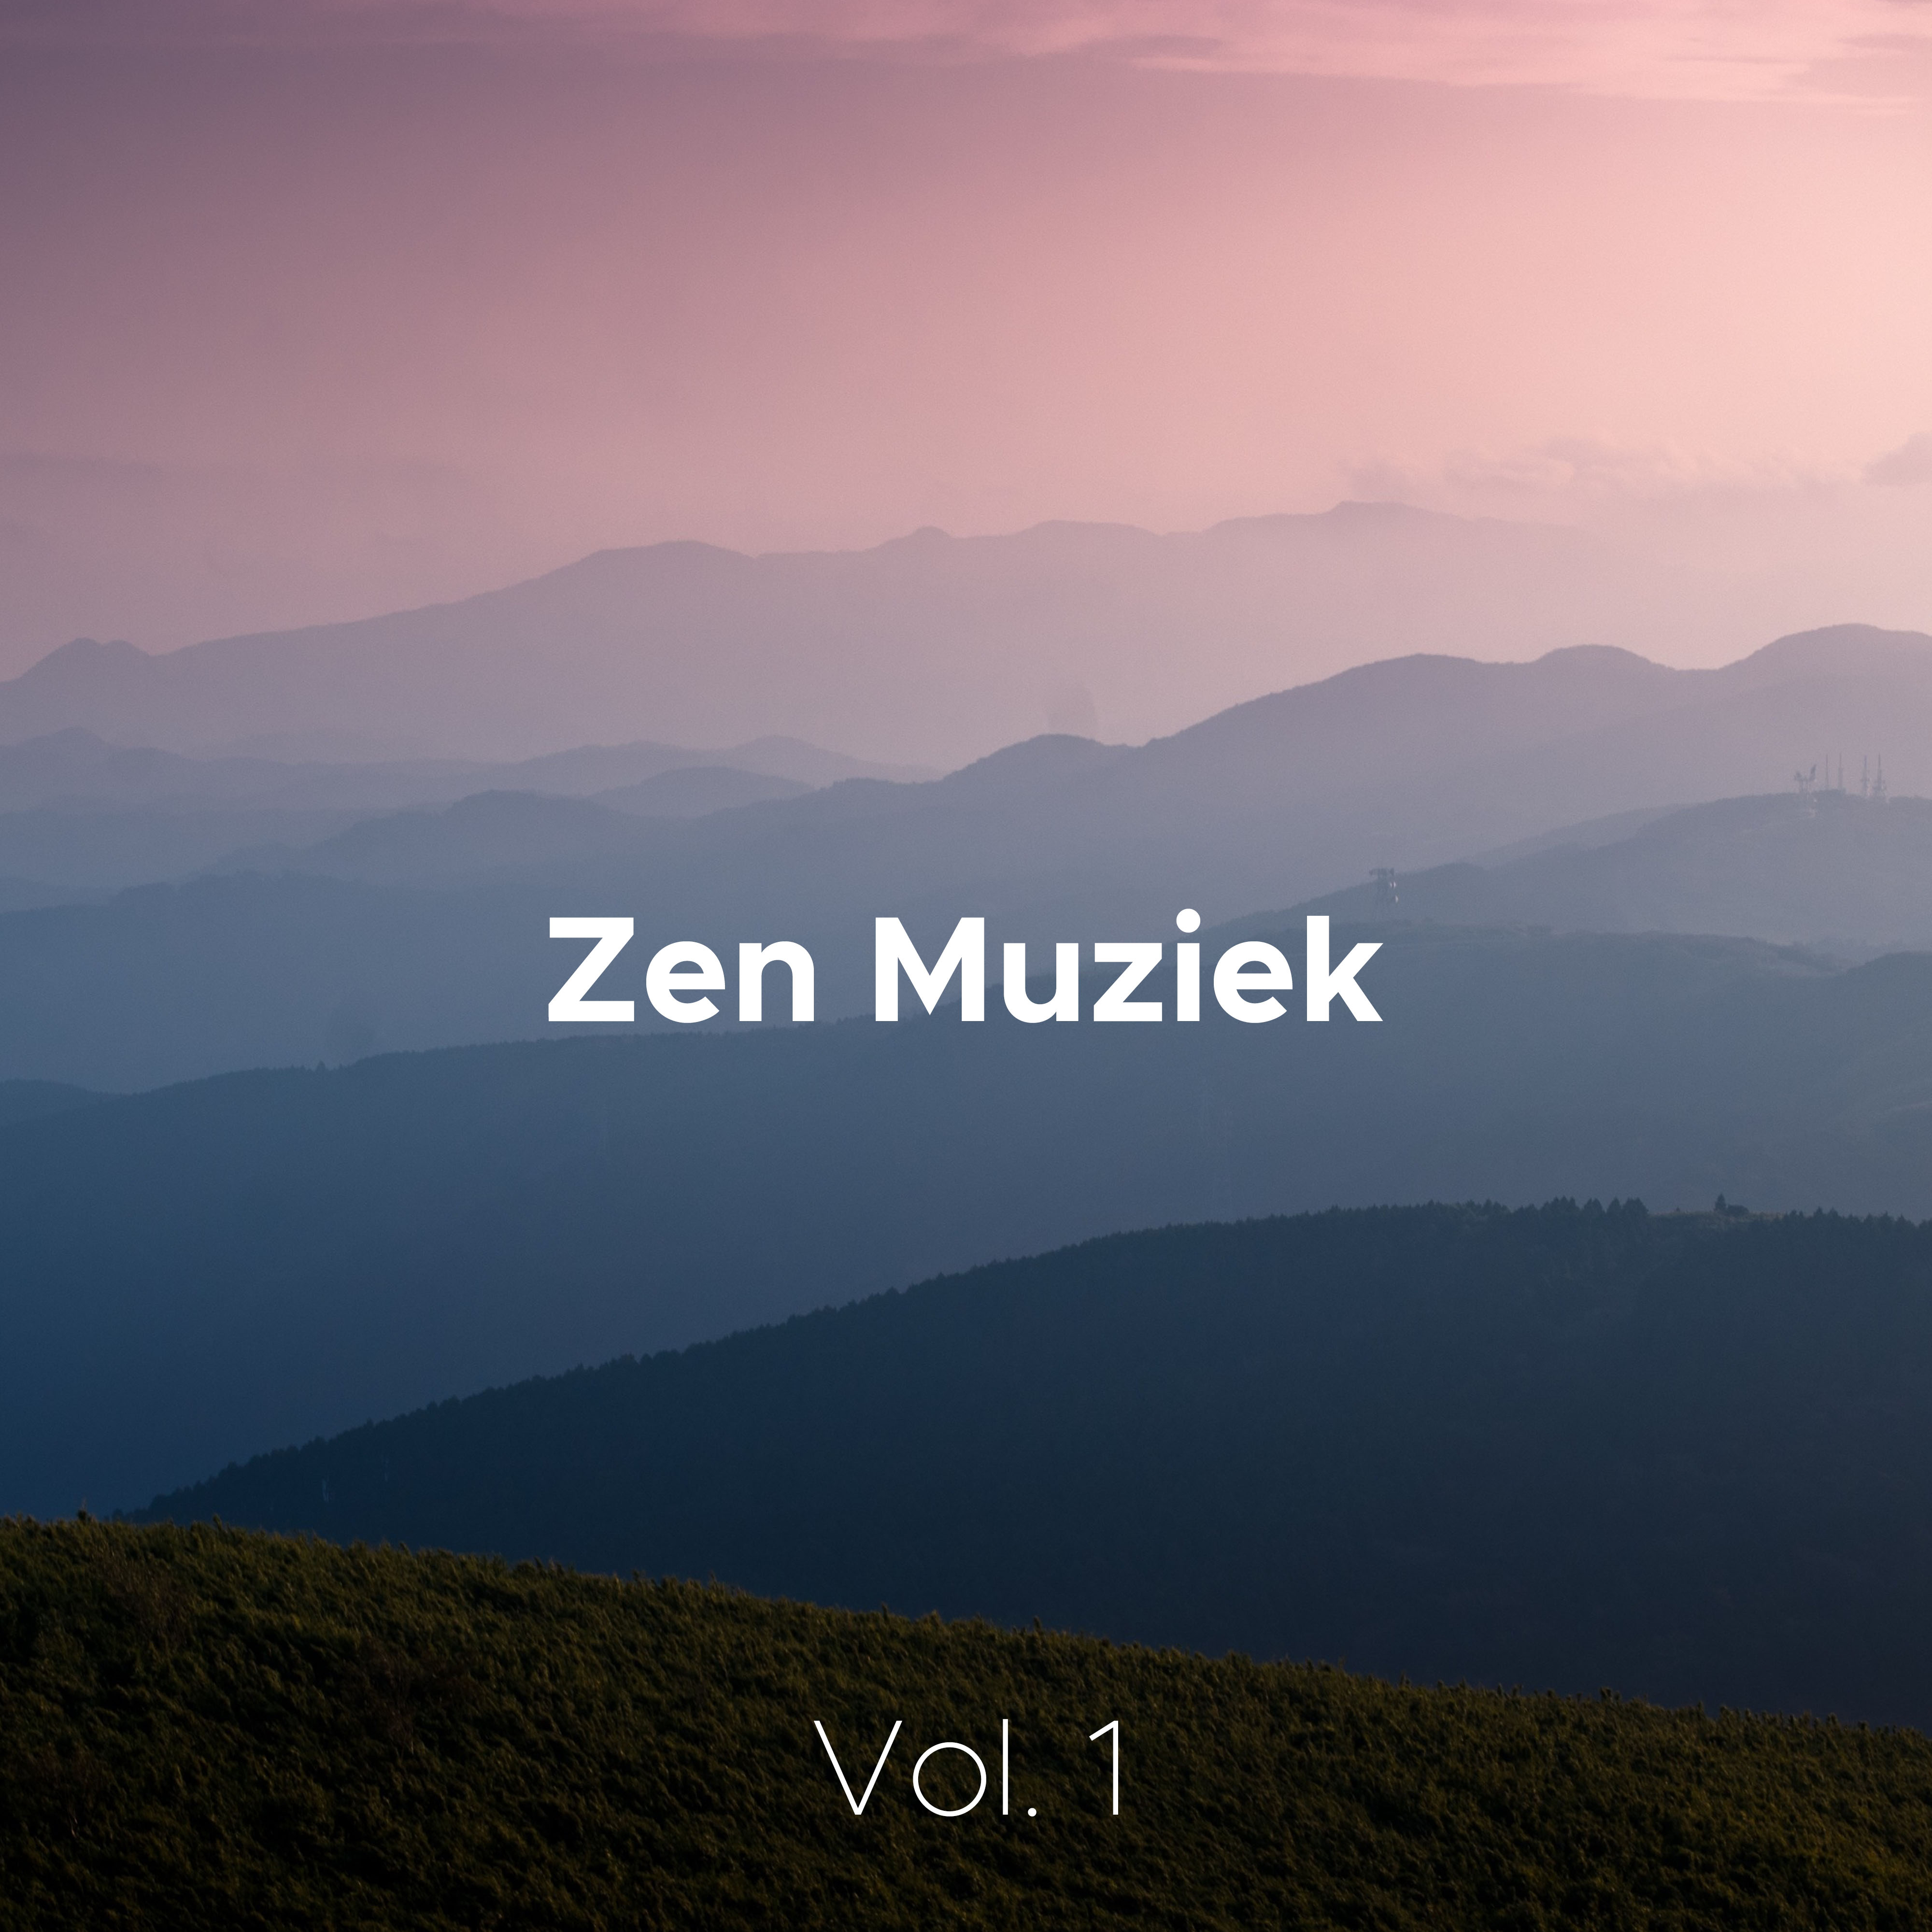 Zen Muziek Vol. 1